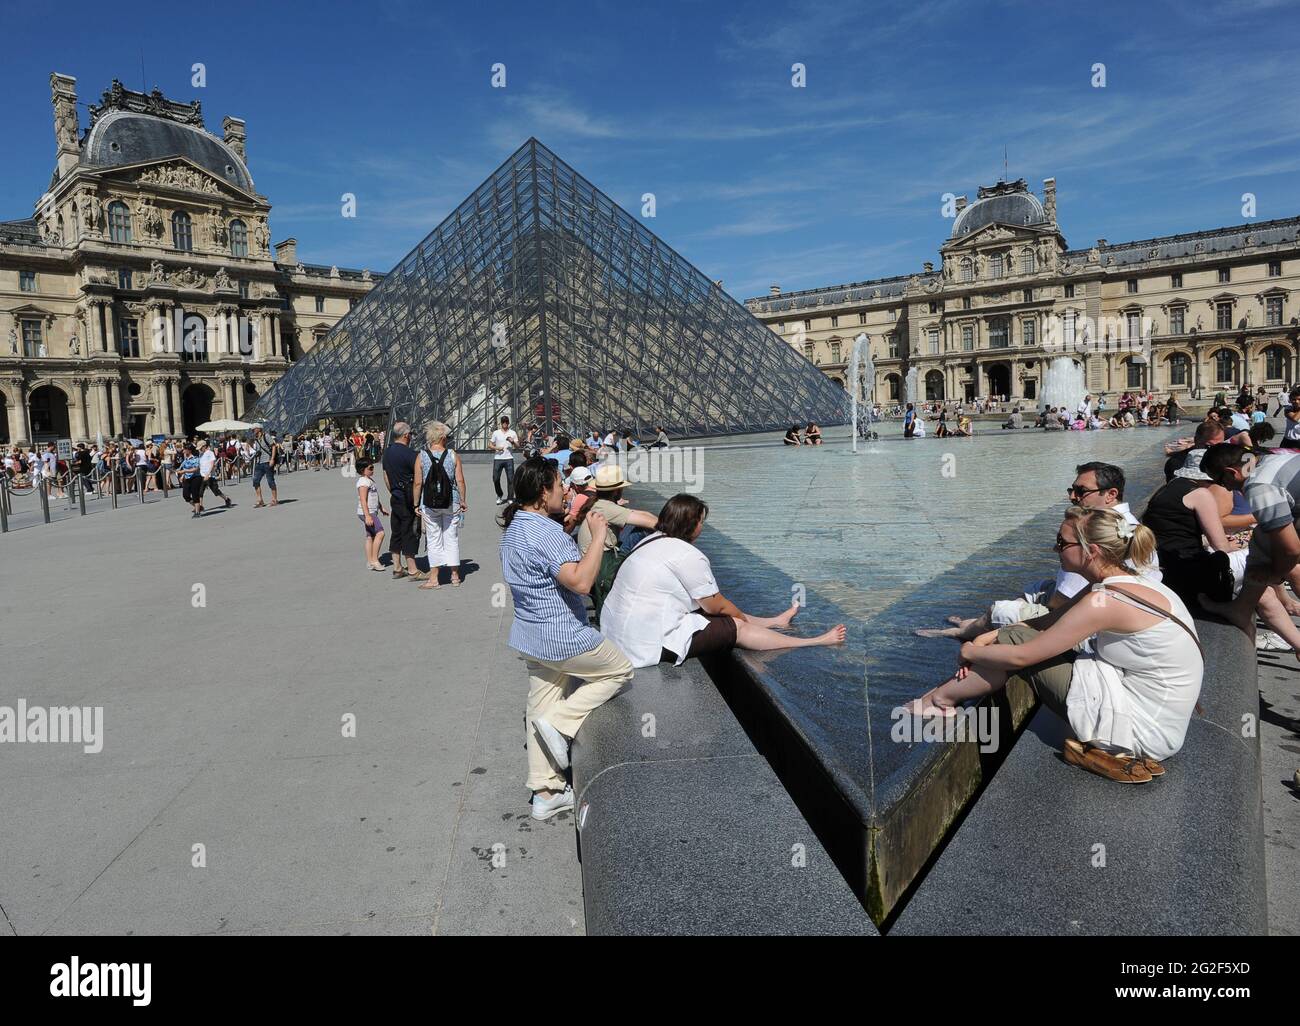 Touristen kühlen ihre Füße vor dem Louvre in Paris Frankreich. Ausstellung Touristen Besucher Menschen besuchen europa europäischen Tourismus-Kultur Stockfoto